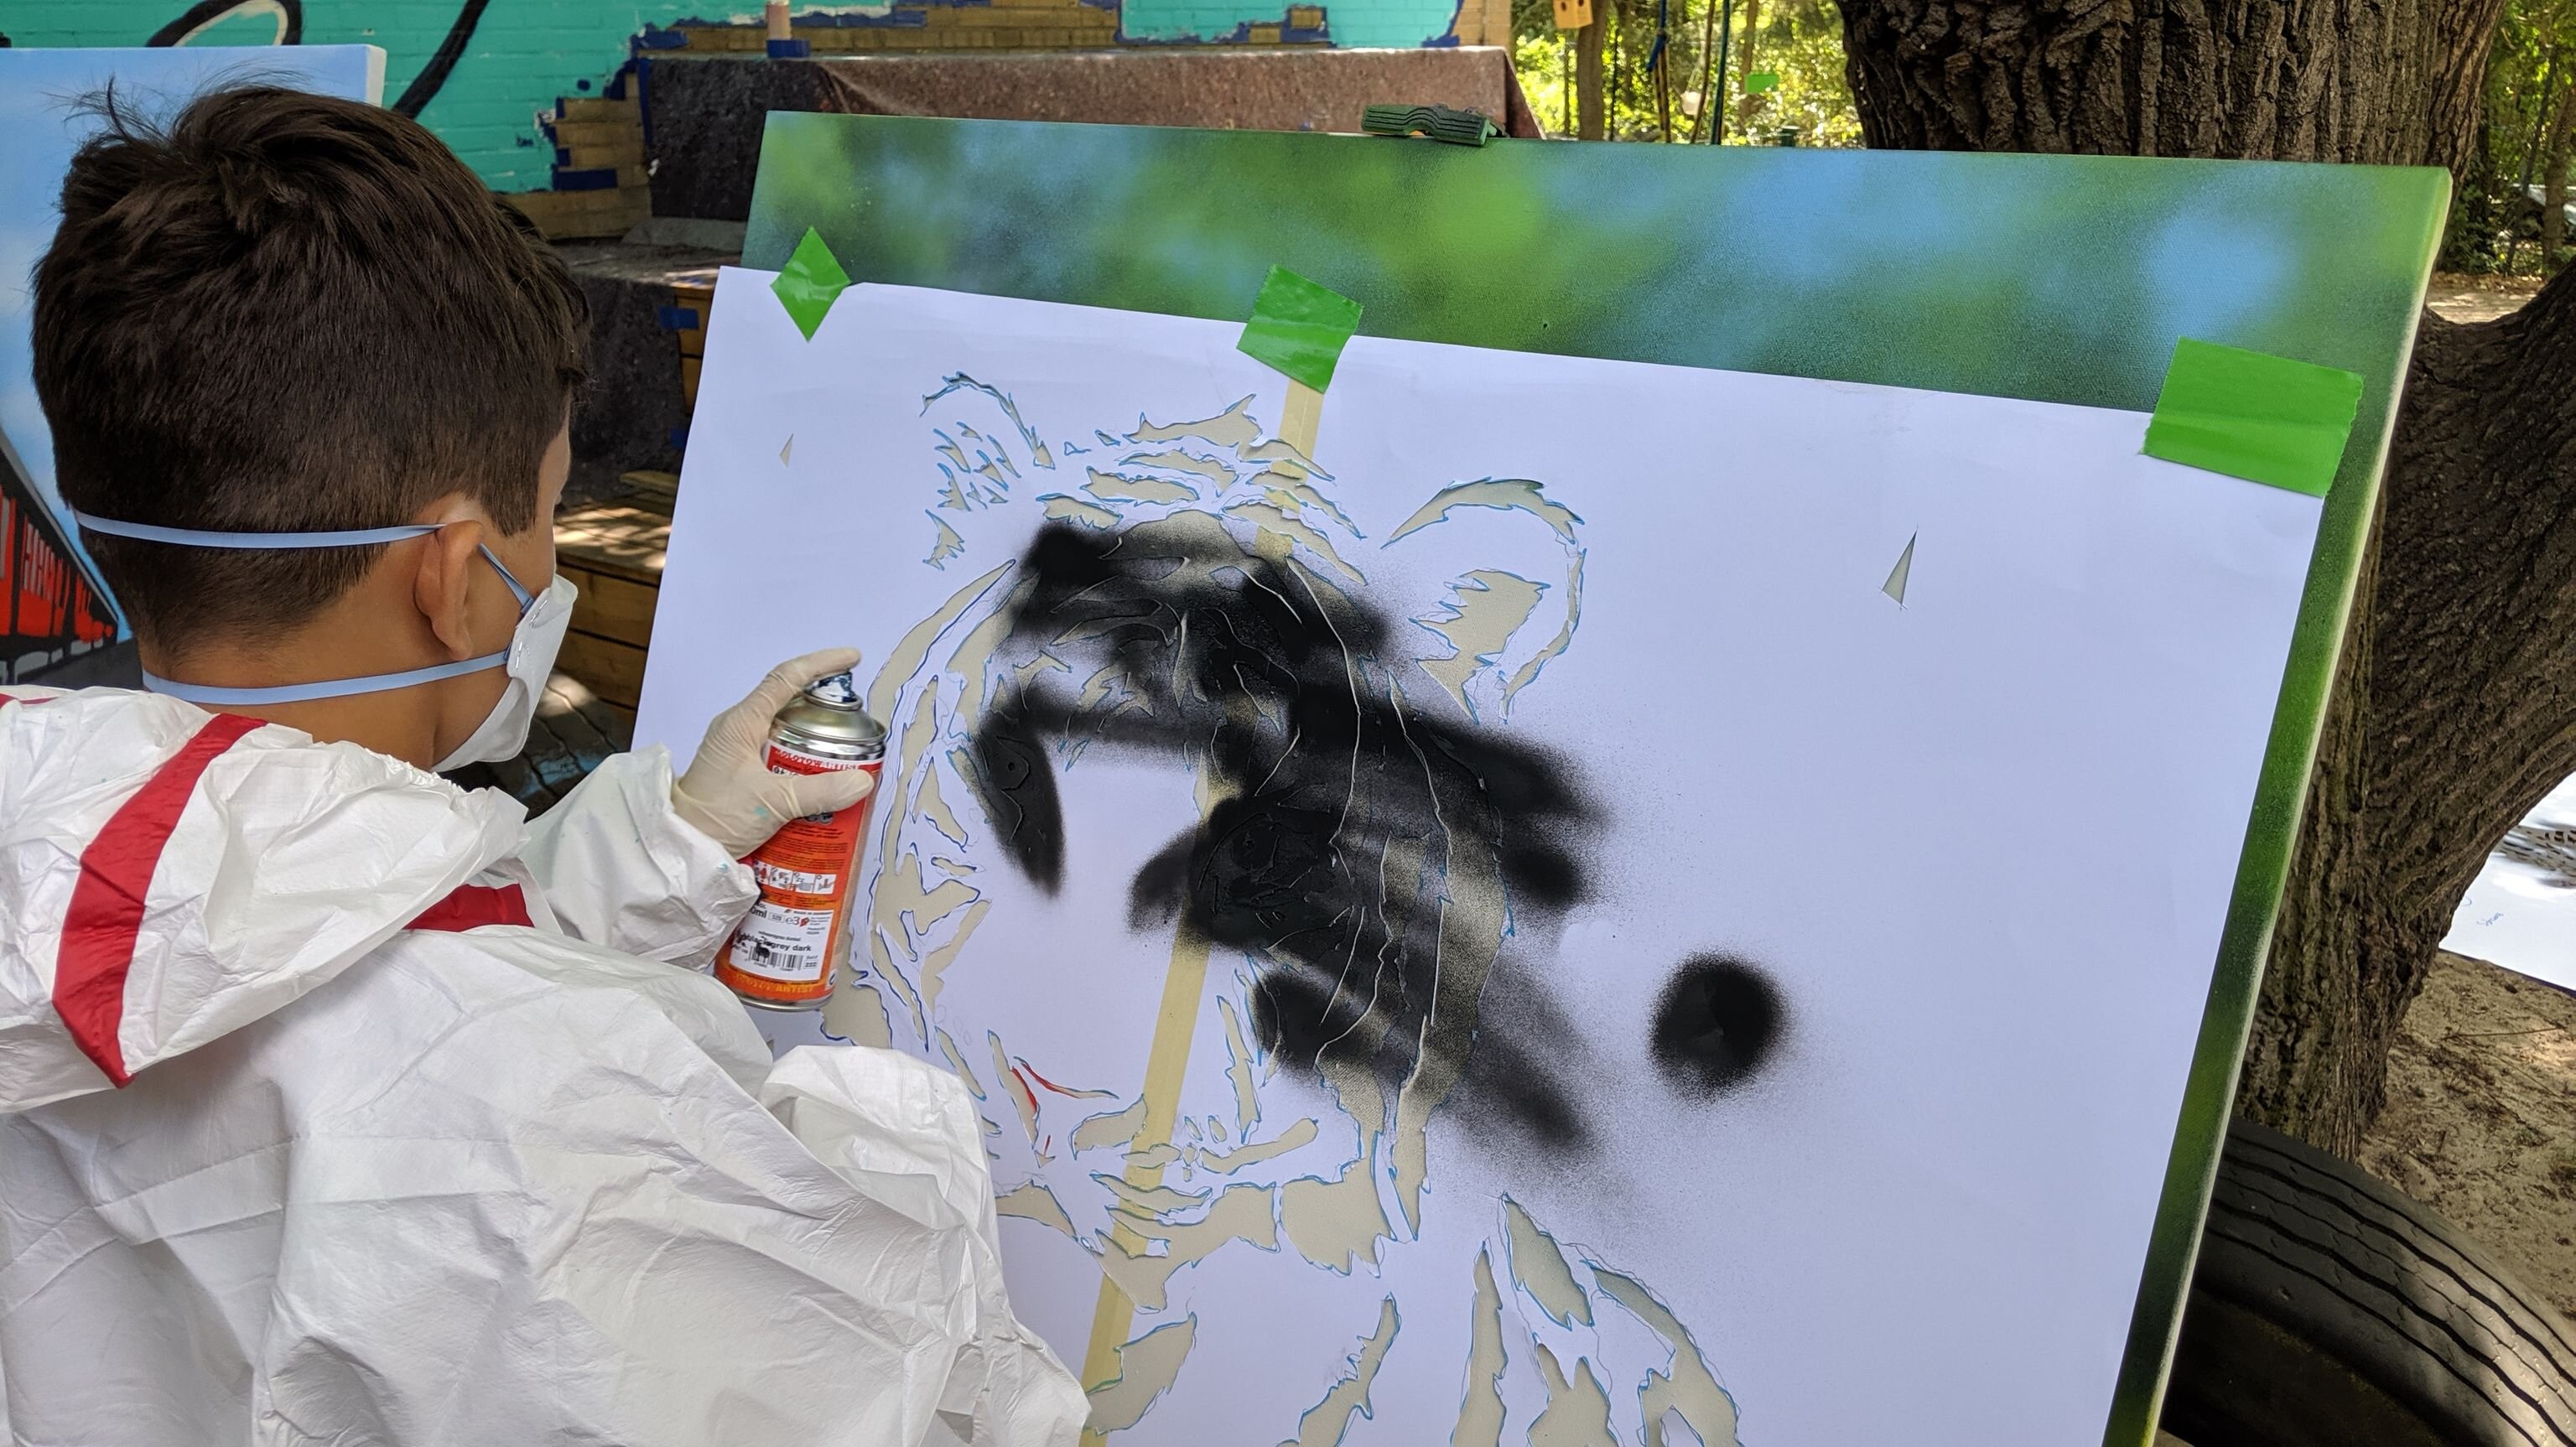 Junge sprüht Farbe auf eine Leinwand mit Schablone